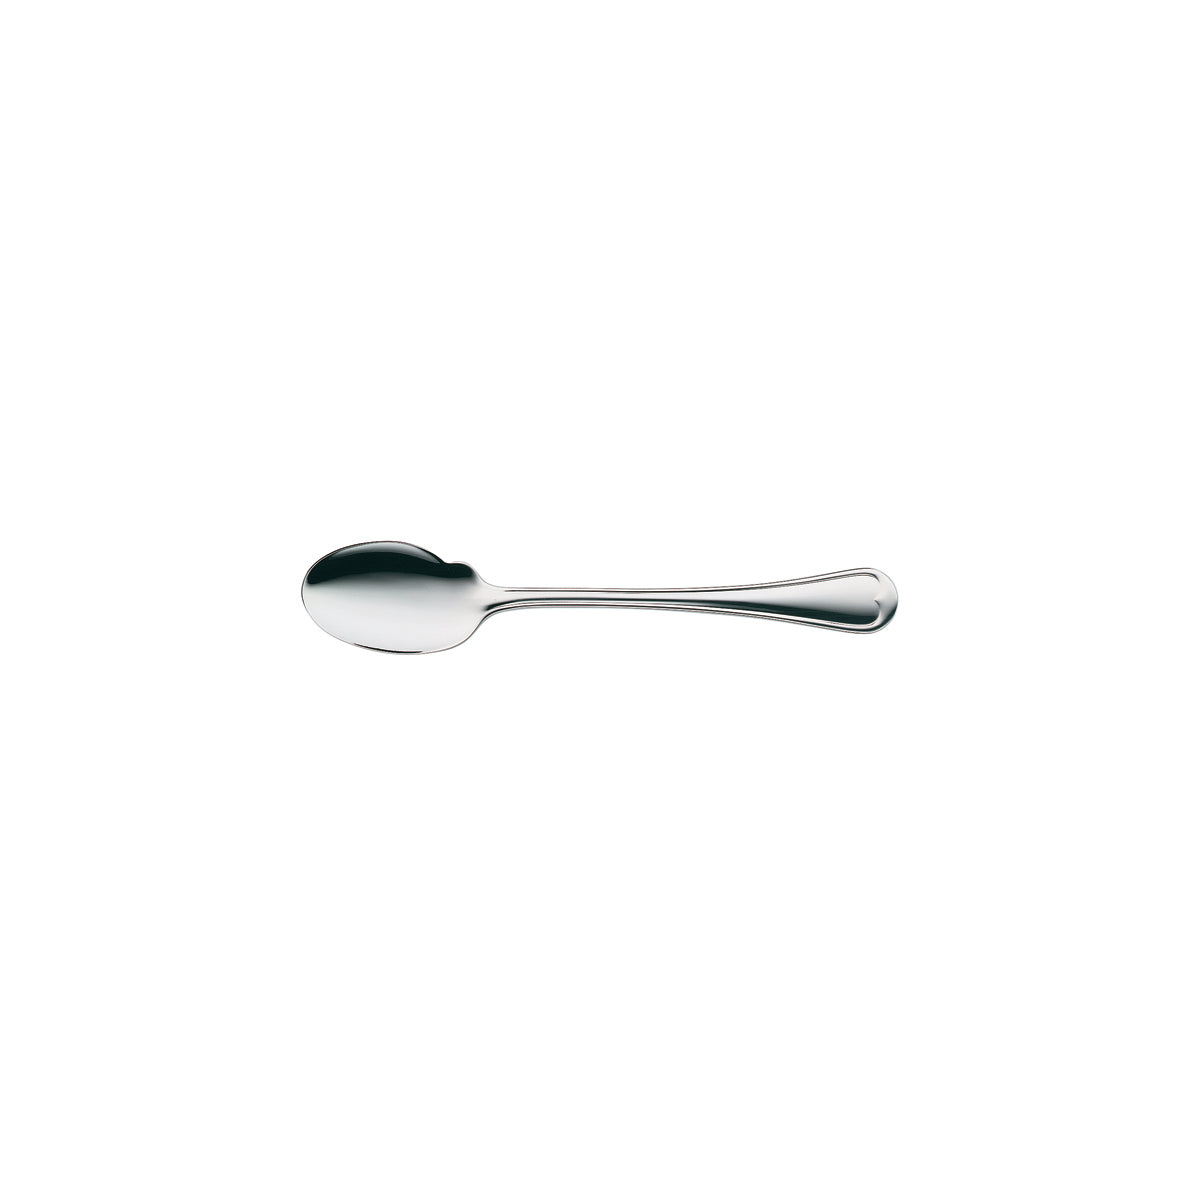 12.5411.6040 WMF Metropolitan Gourmet Spoon Stainless Steel Tomkin Australia Hospitality Supplies